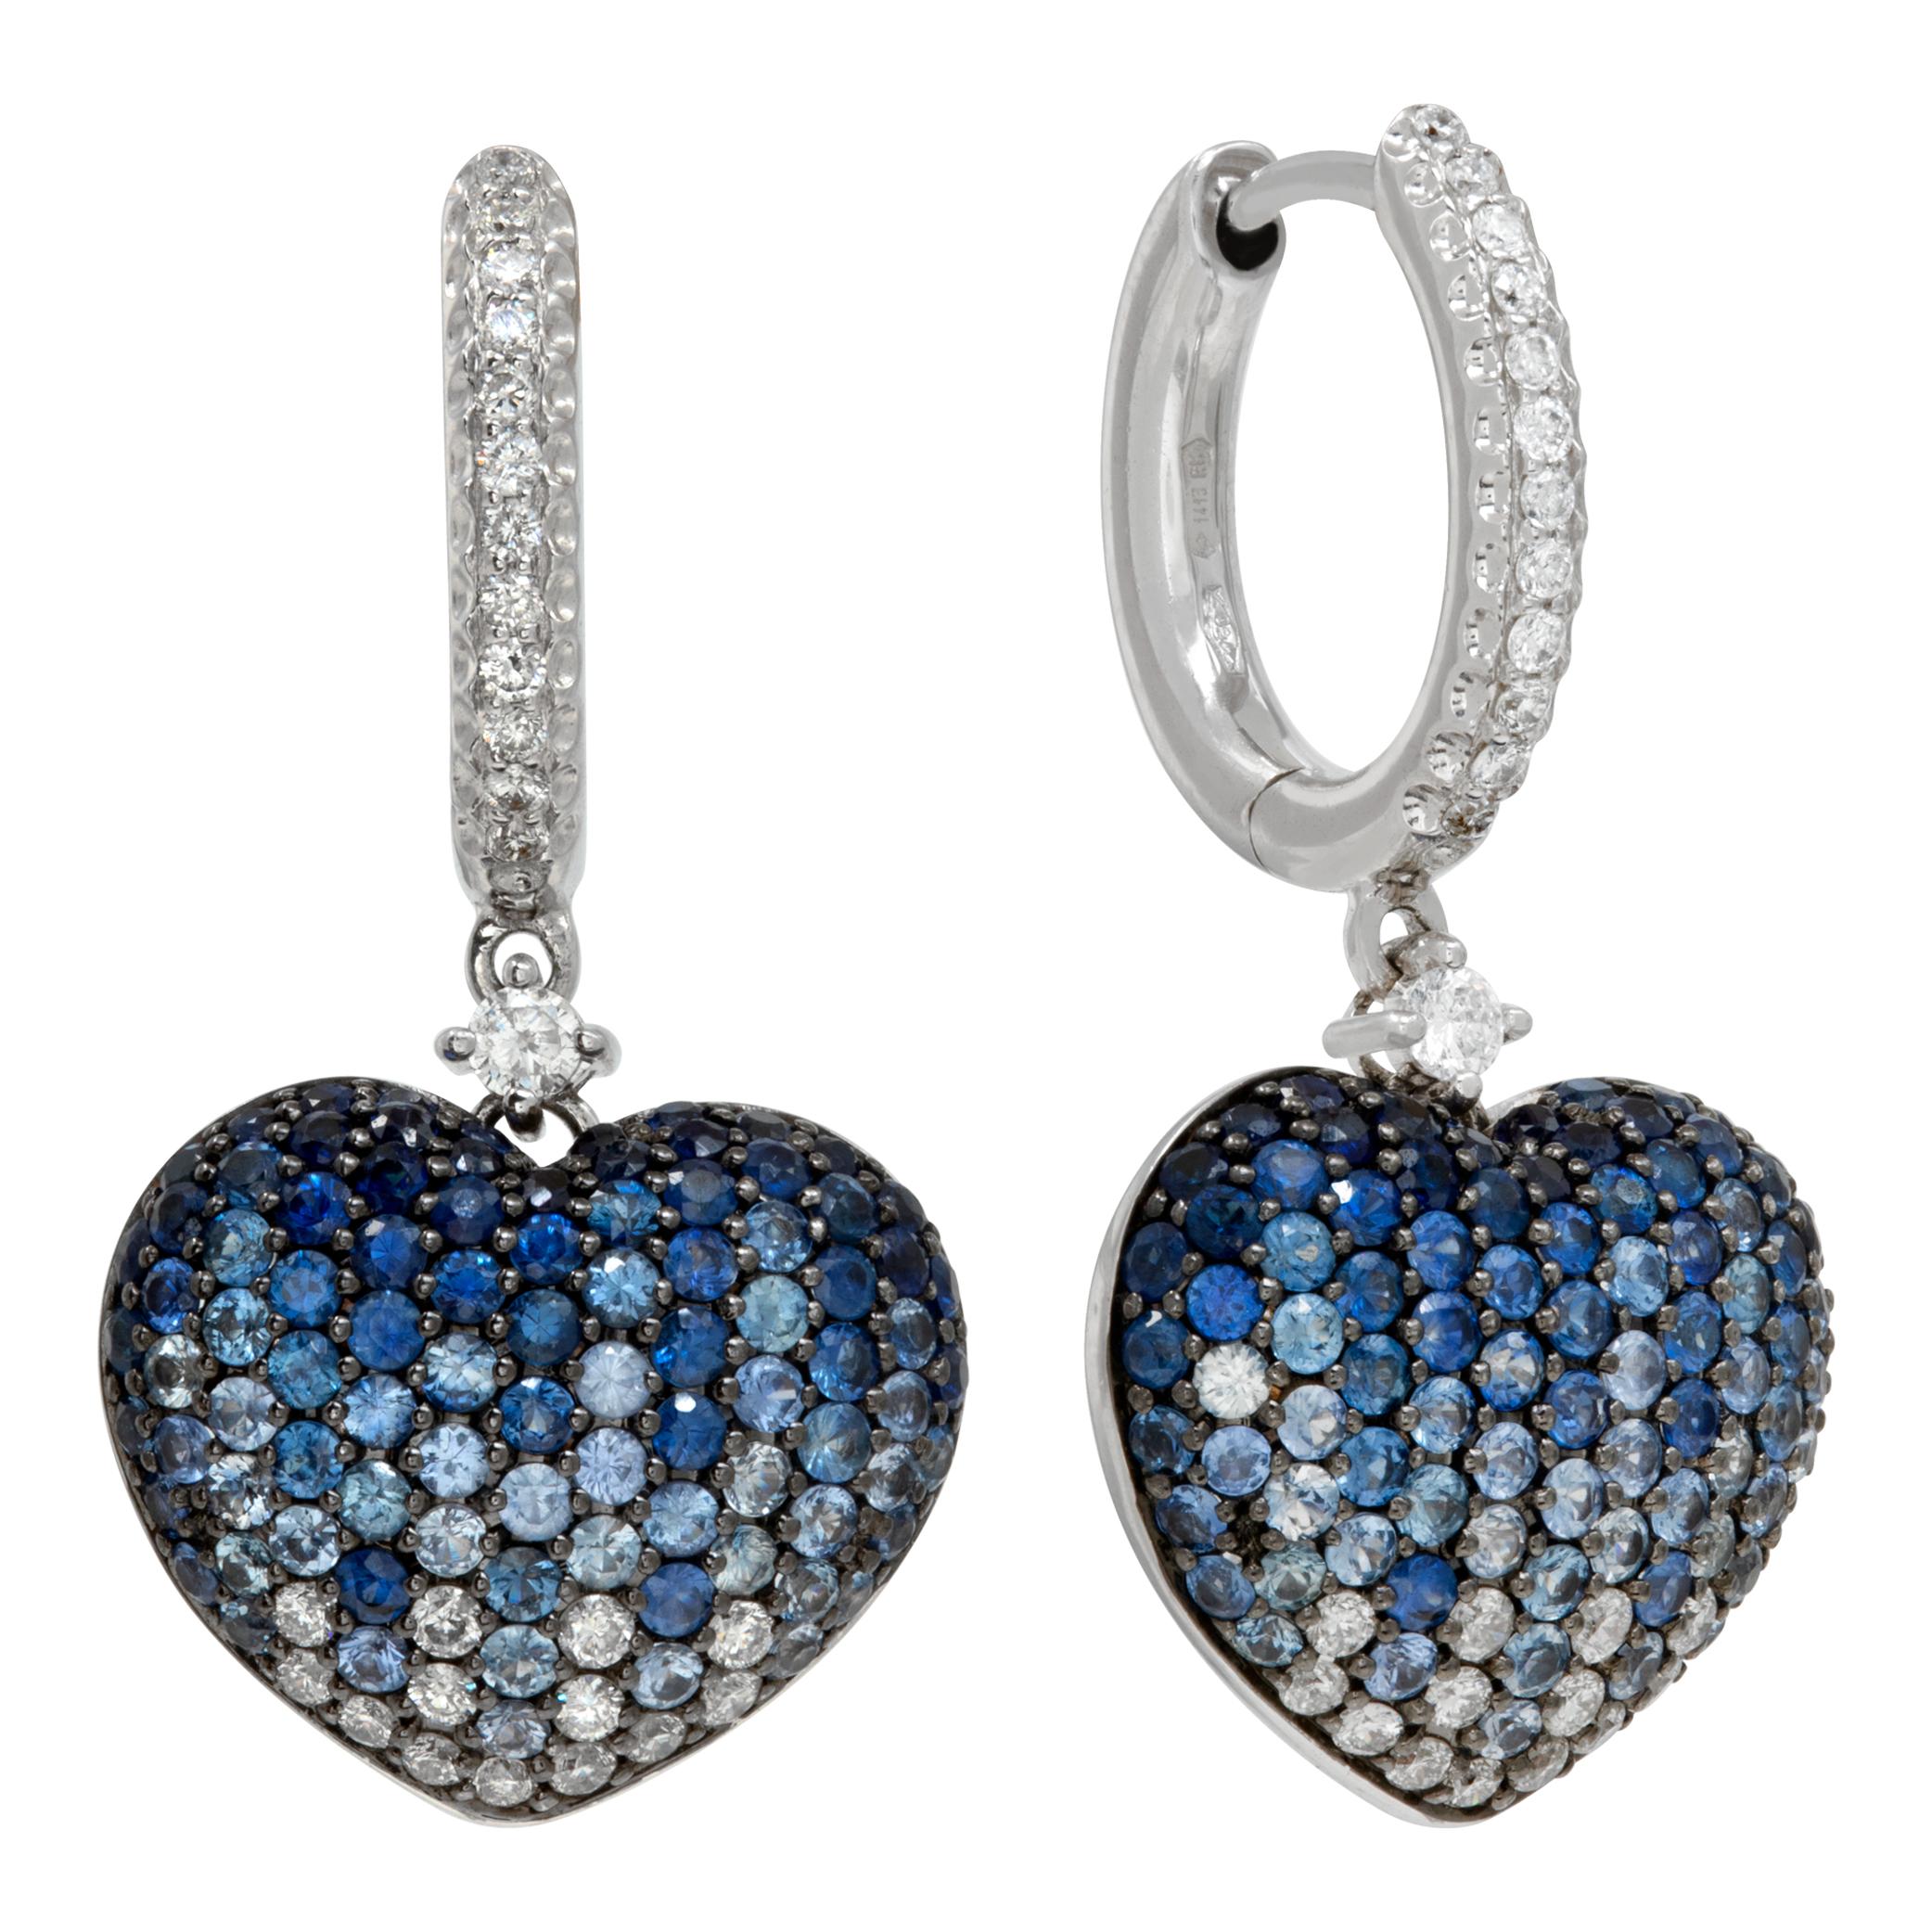 Boucles d'oreilles pendantes en saphir et diamant en or blanc 18k. Environ 0,47 carats de diamants et 2,13 carats de saphirs bleus. Longueur de 1,25 pouce.